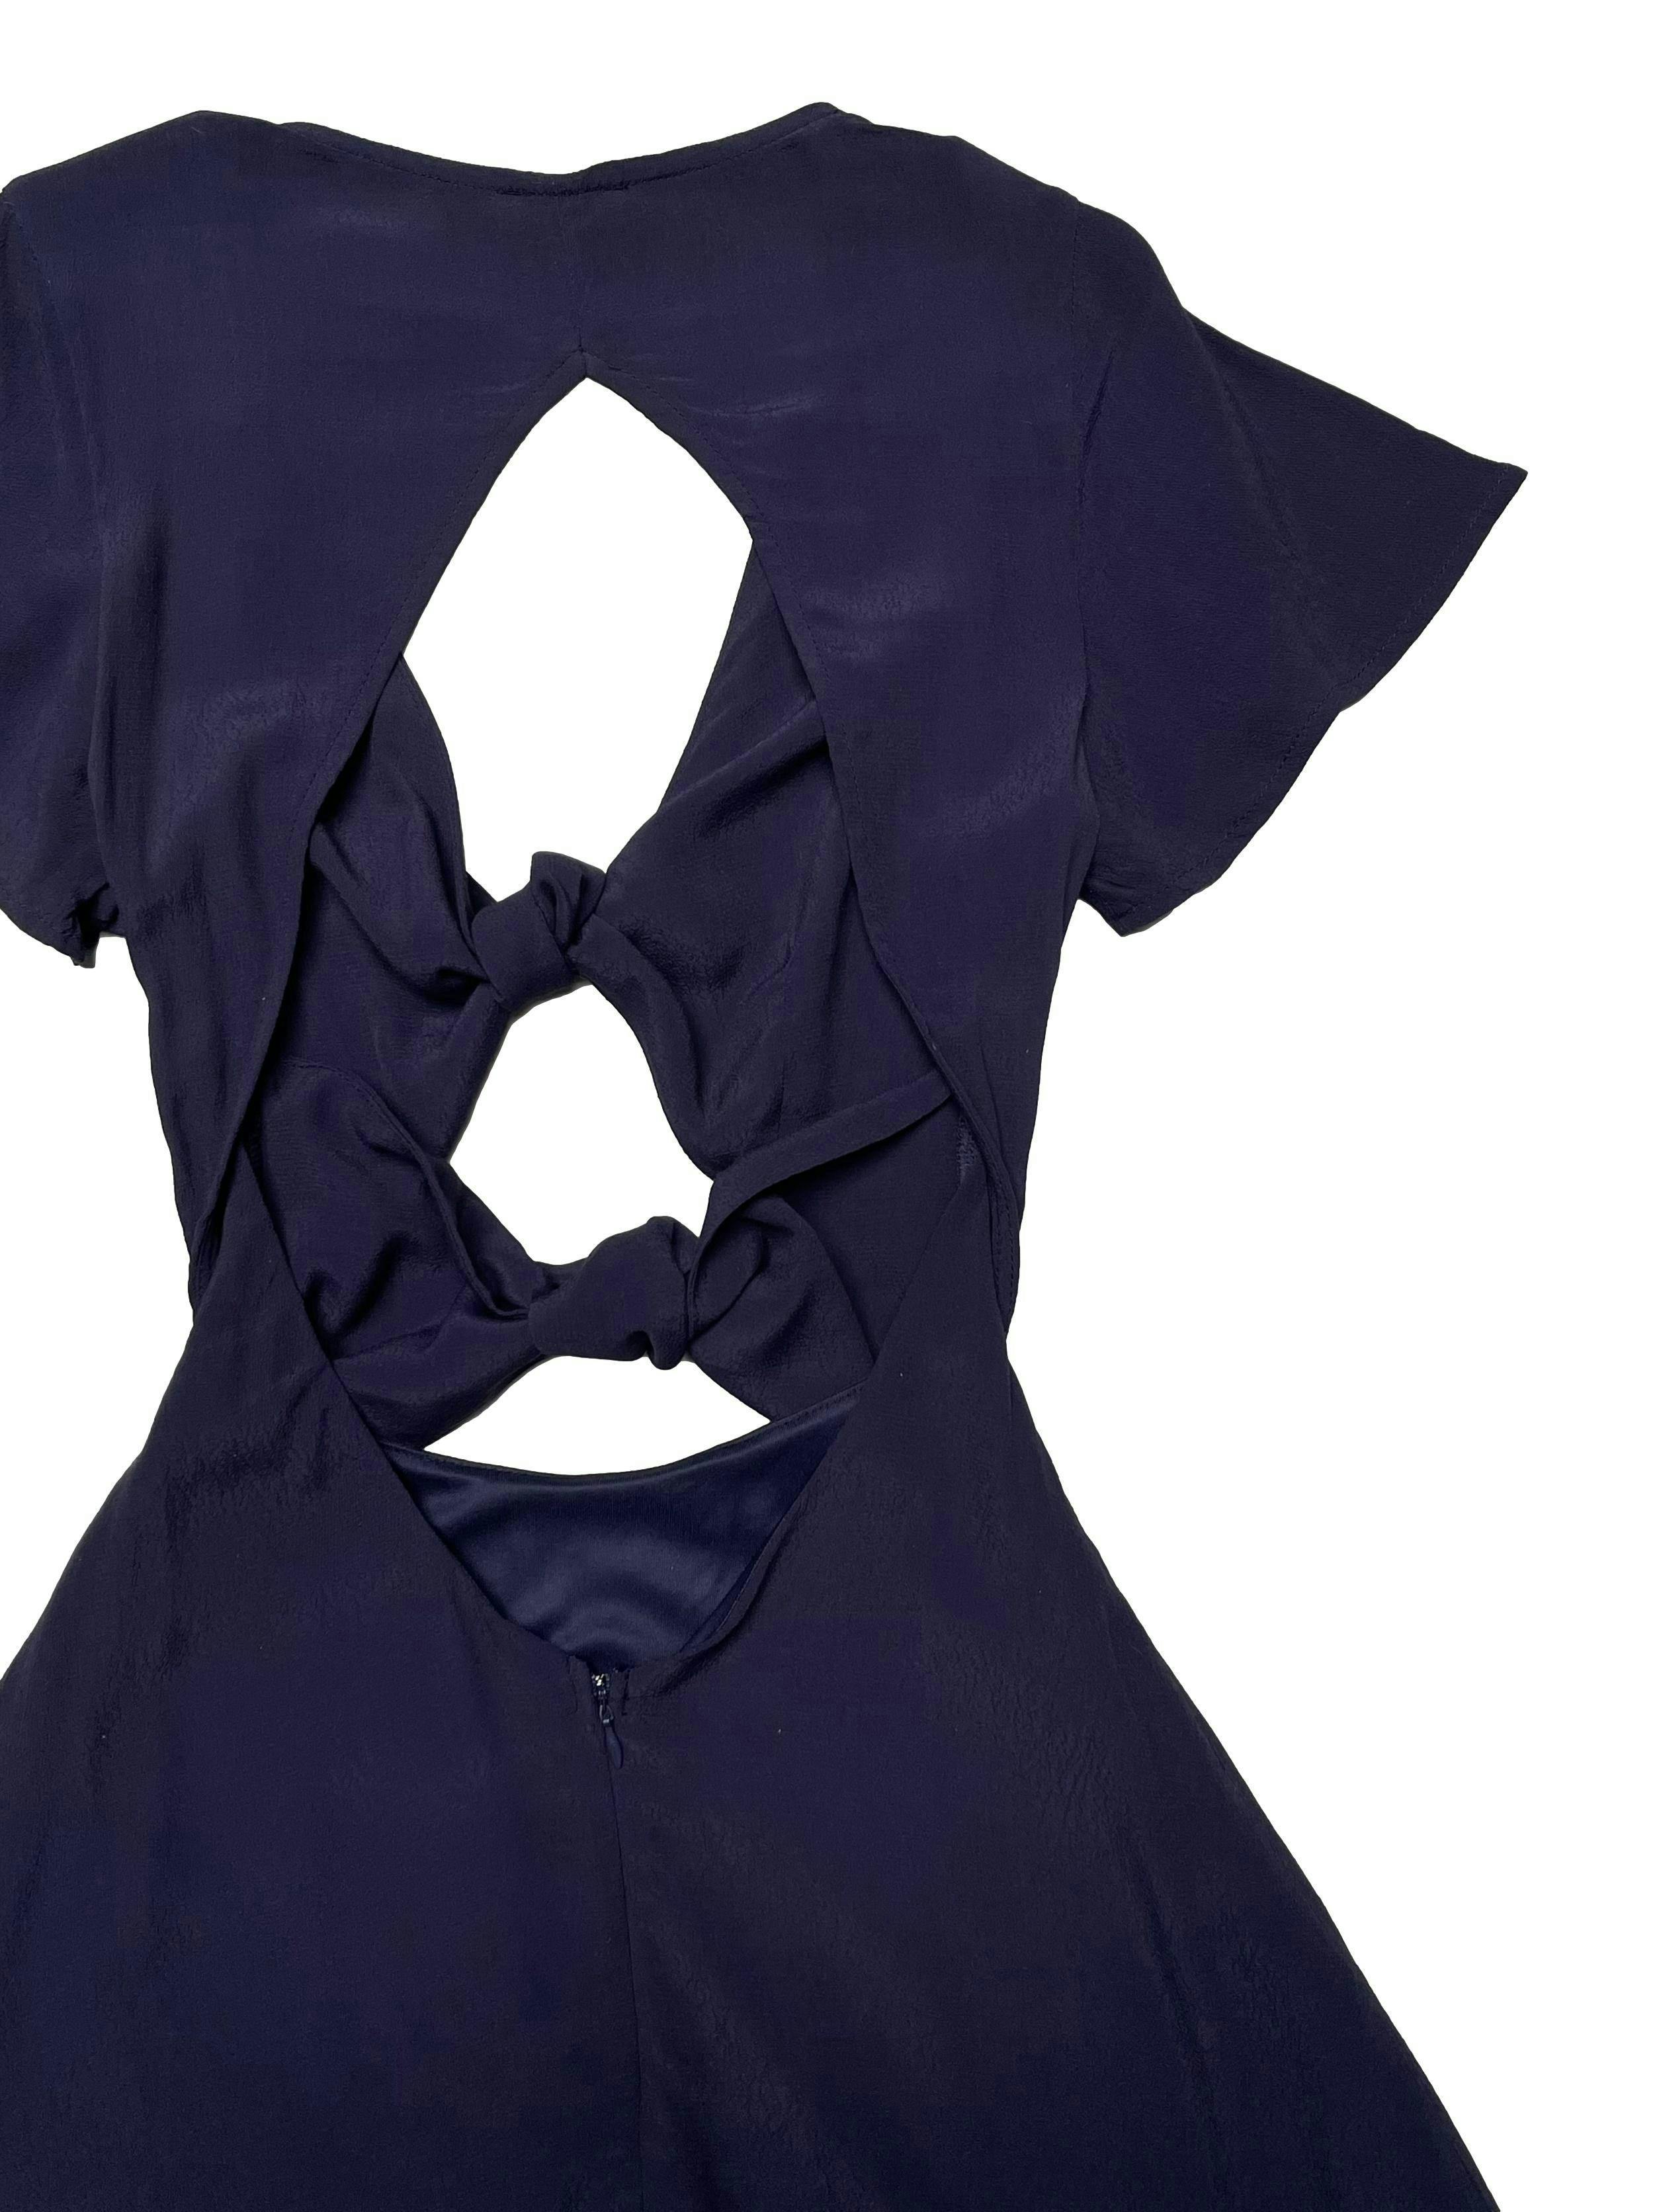 Vestido Tobi azul de tela plana fresca, se amarra en busto y cintura, es forrado, escote en la espalda, falda en A con cierre posterior. Busto 90cm Cintura 66cm Largo 85cm. Nuevo con etiqueta